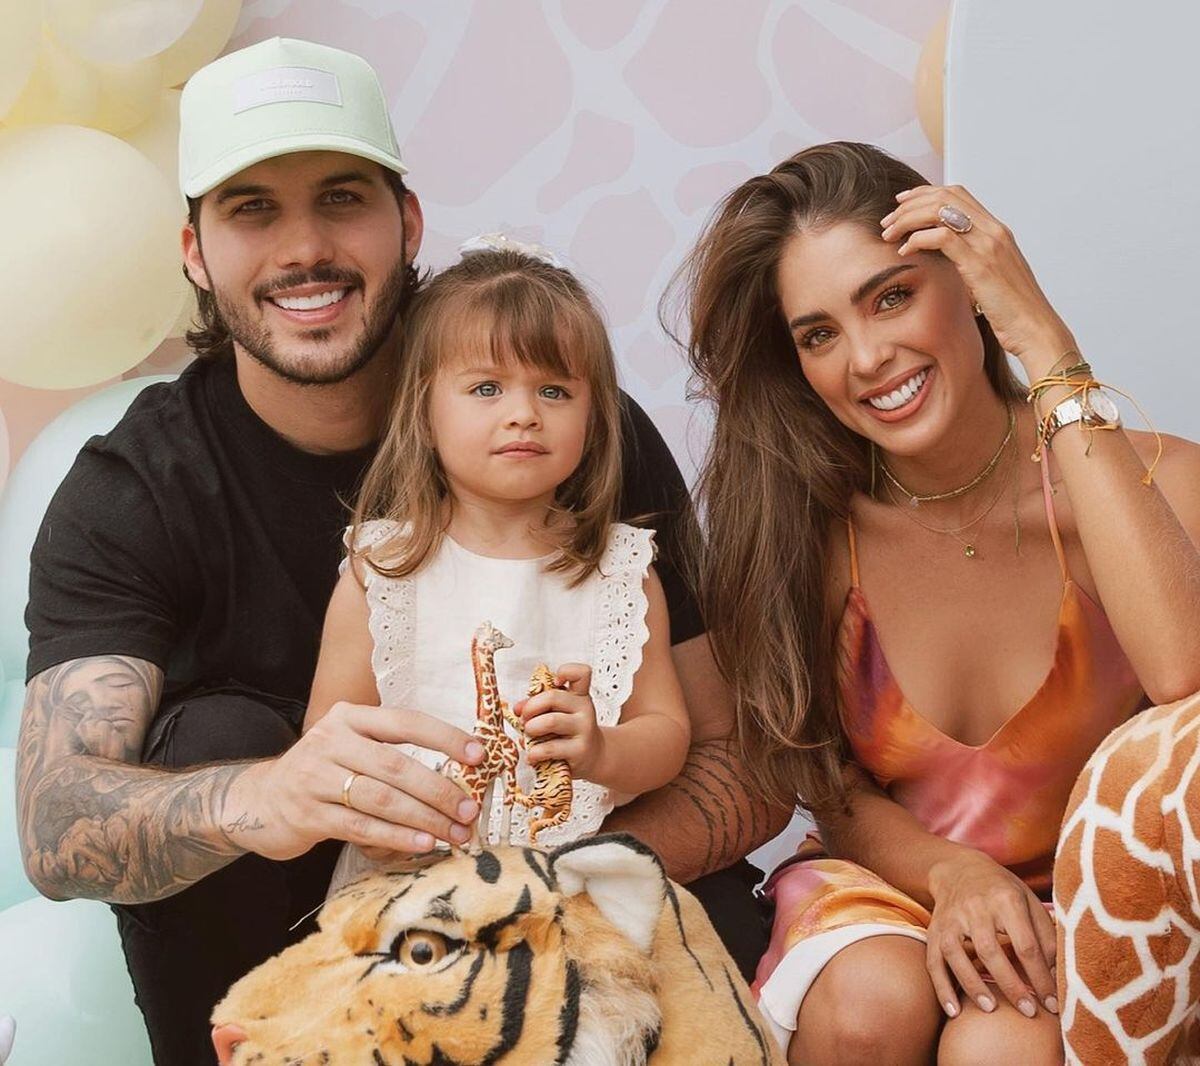 La familia de Camila Avella: su esposo y pequeña hija (Foto: @cebrakidsfotografia / Instagram)